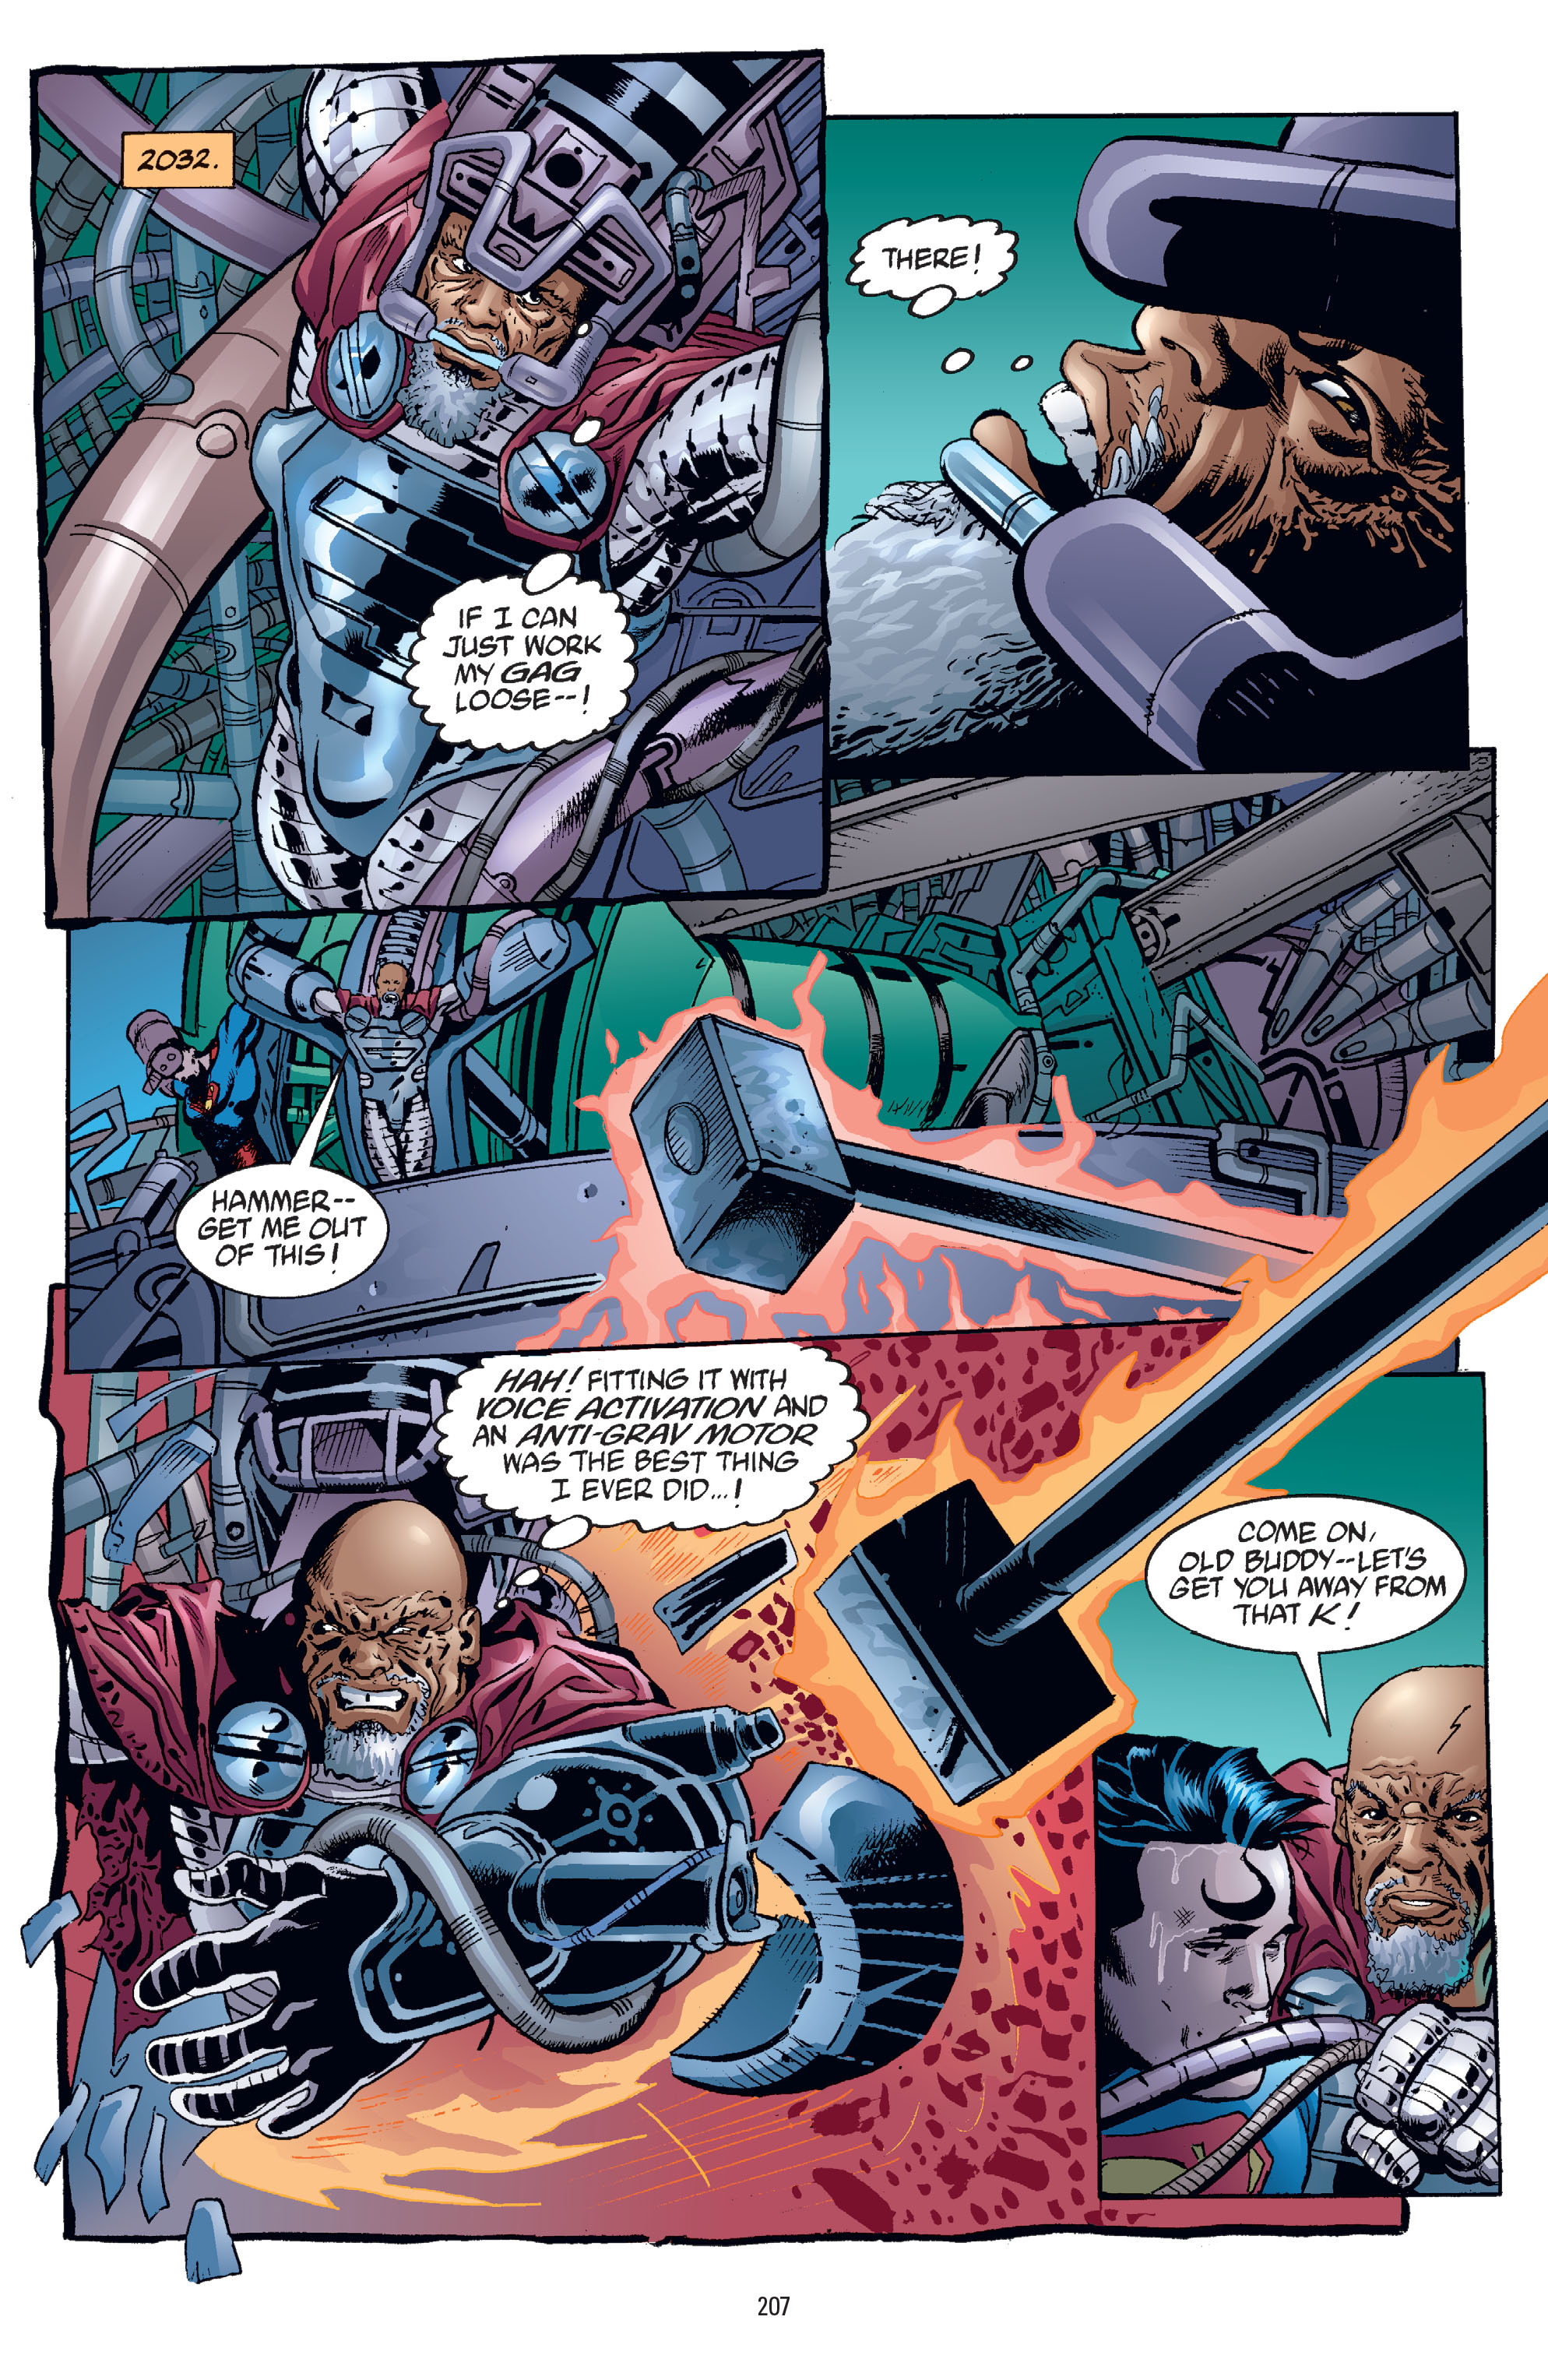 DC Comics/Dark Horse Comics: Justice League Full #1 - English 201